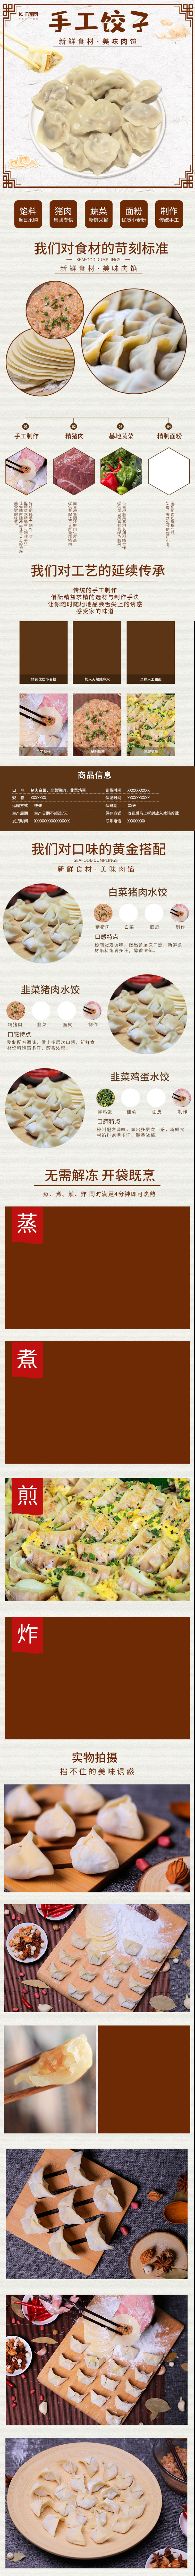 中国风生鲜水饺饺子传统美食电商详情页图片